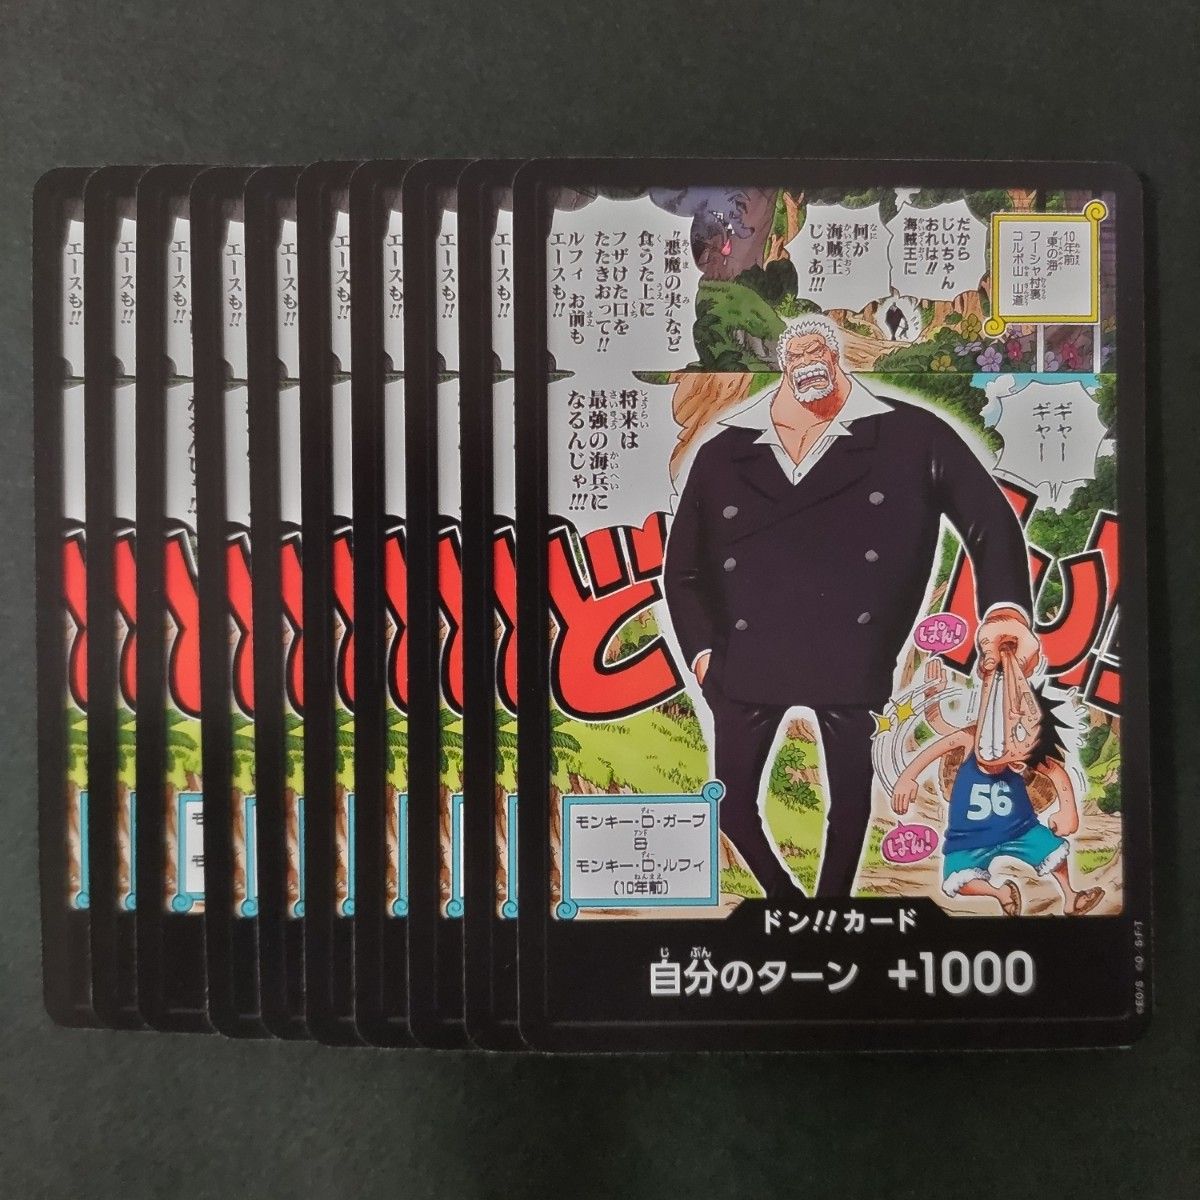 美品 最強ジャンプ4月号付録 ドンカード 10枚 ワンピース カードゲーム